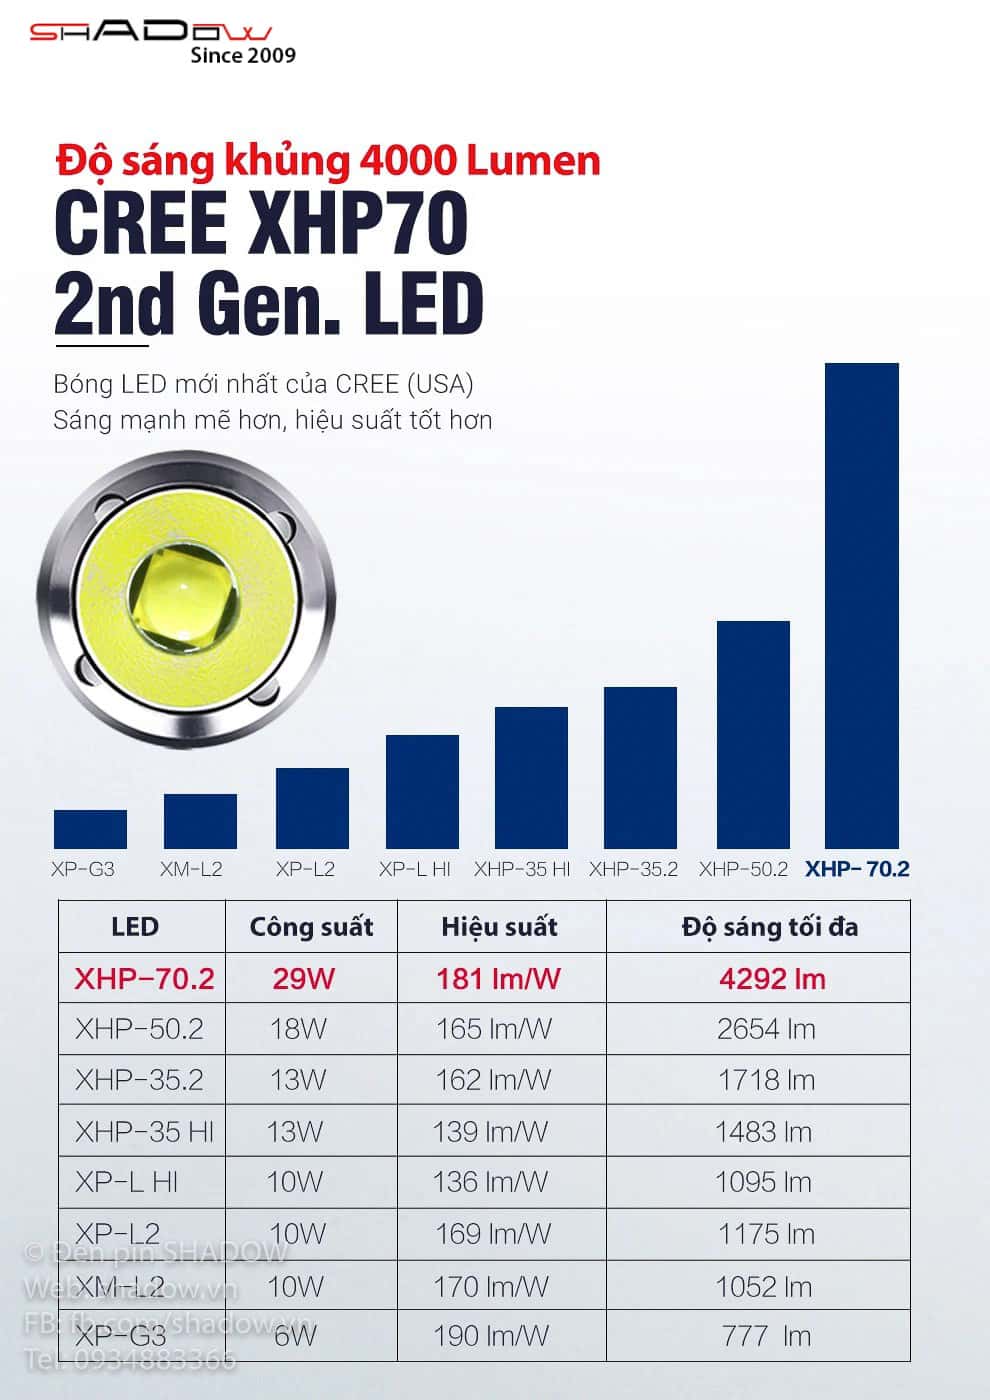 Klarus G15 được trang bị LED CREE XHP 70.2